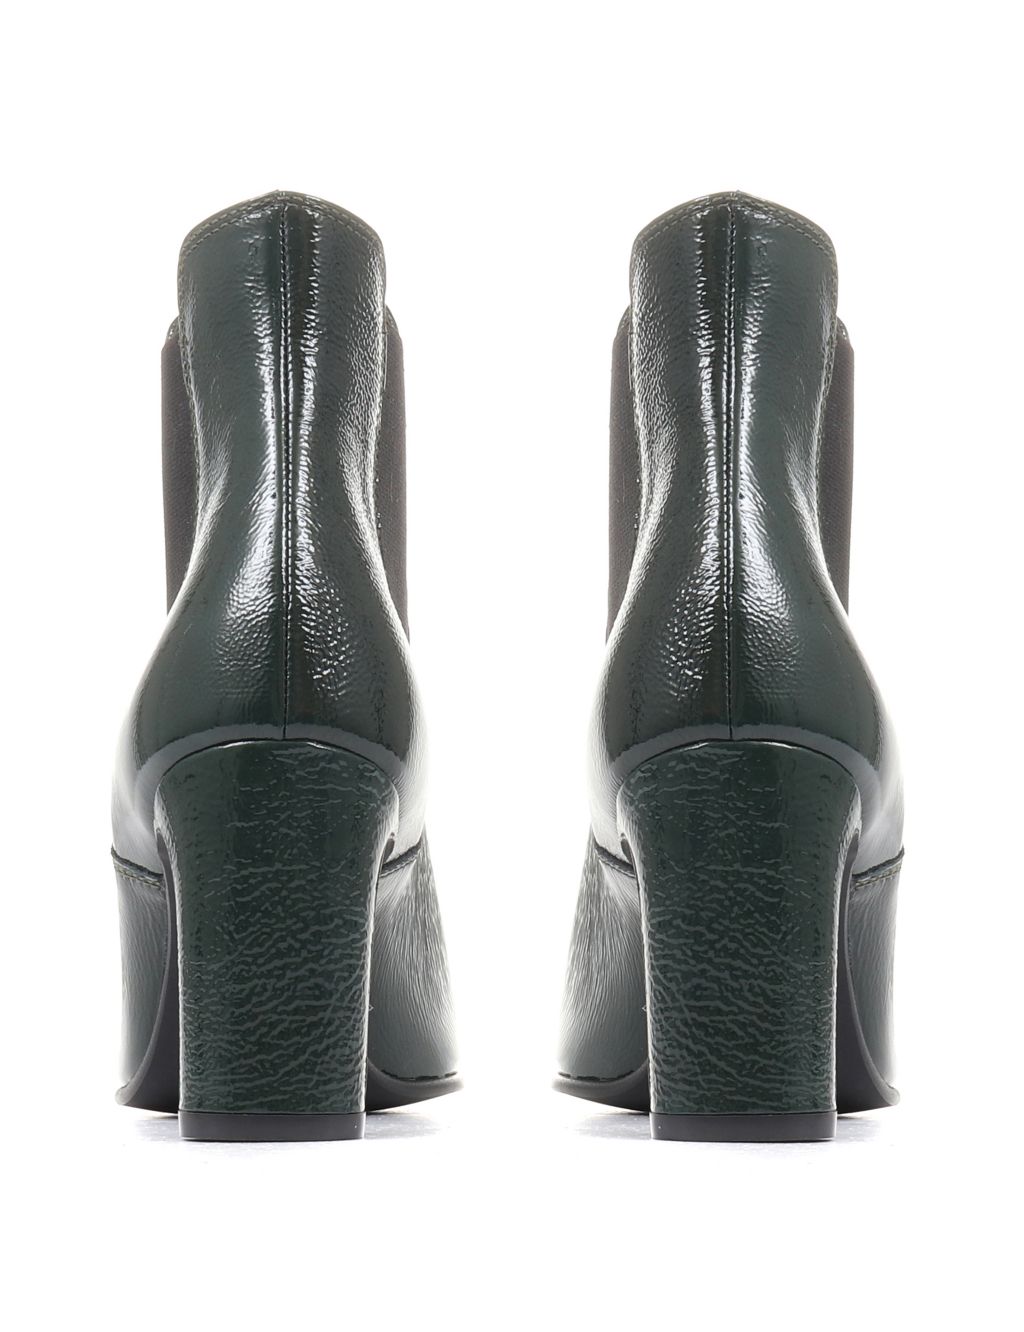 Leather Patent Chelsea Block Heel Boots | Jones Bootmaker | M&S